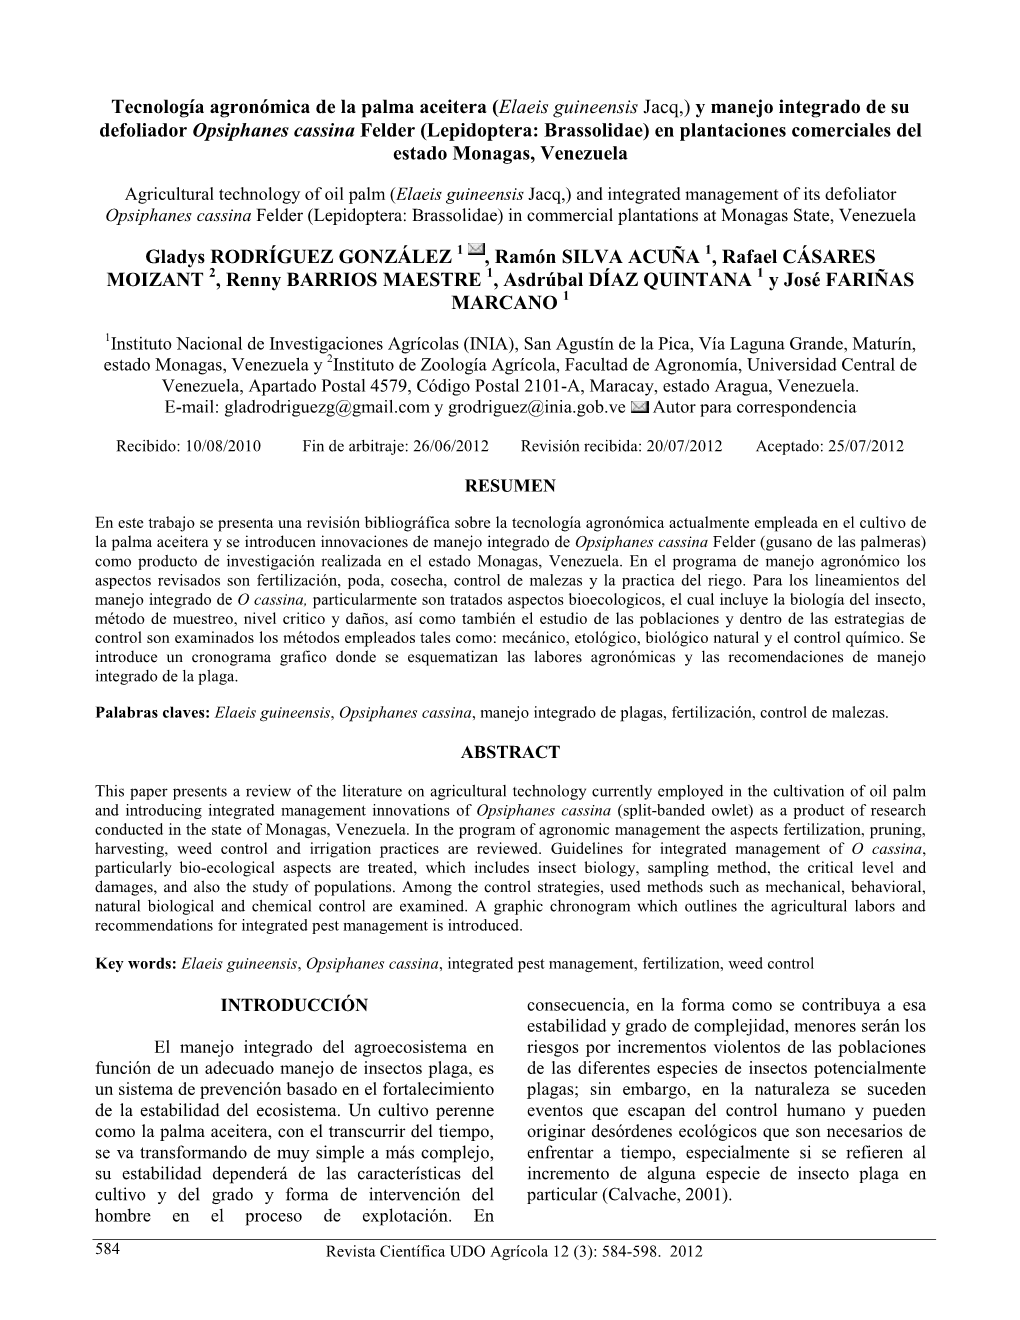 Tecnología Agronómica De La Palma Aceitera (Elaeis Guineensis Jacq,) Y Manejo Integrado De Su Defoliador Opsiphanes